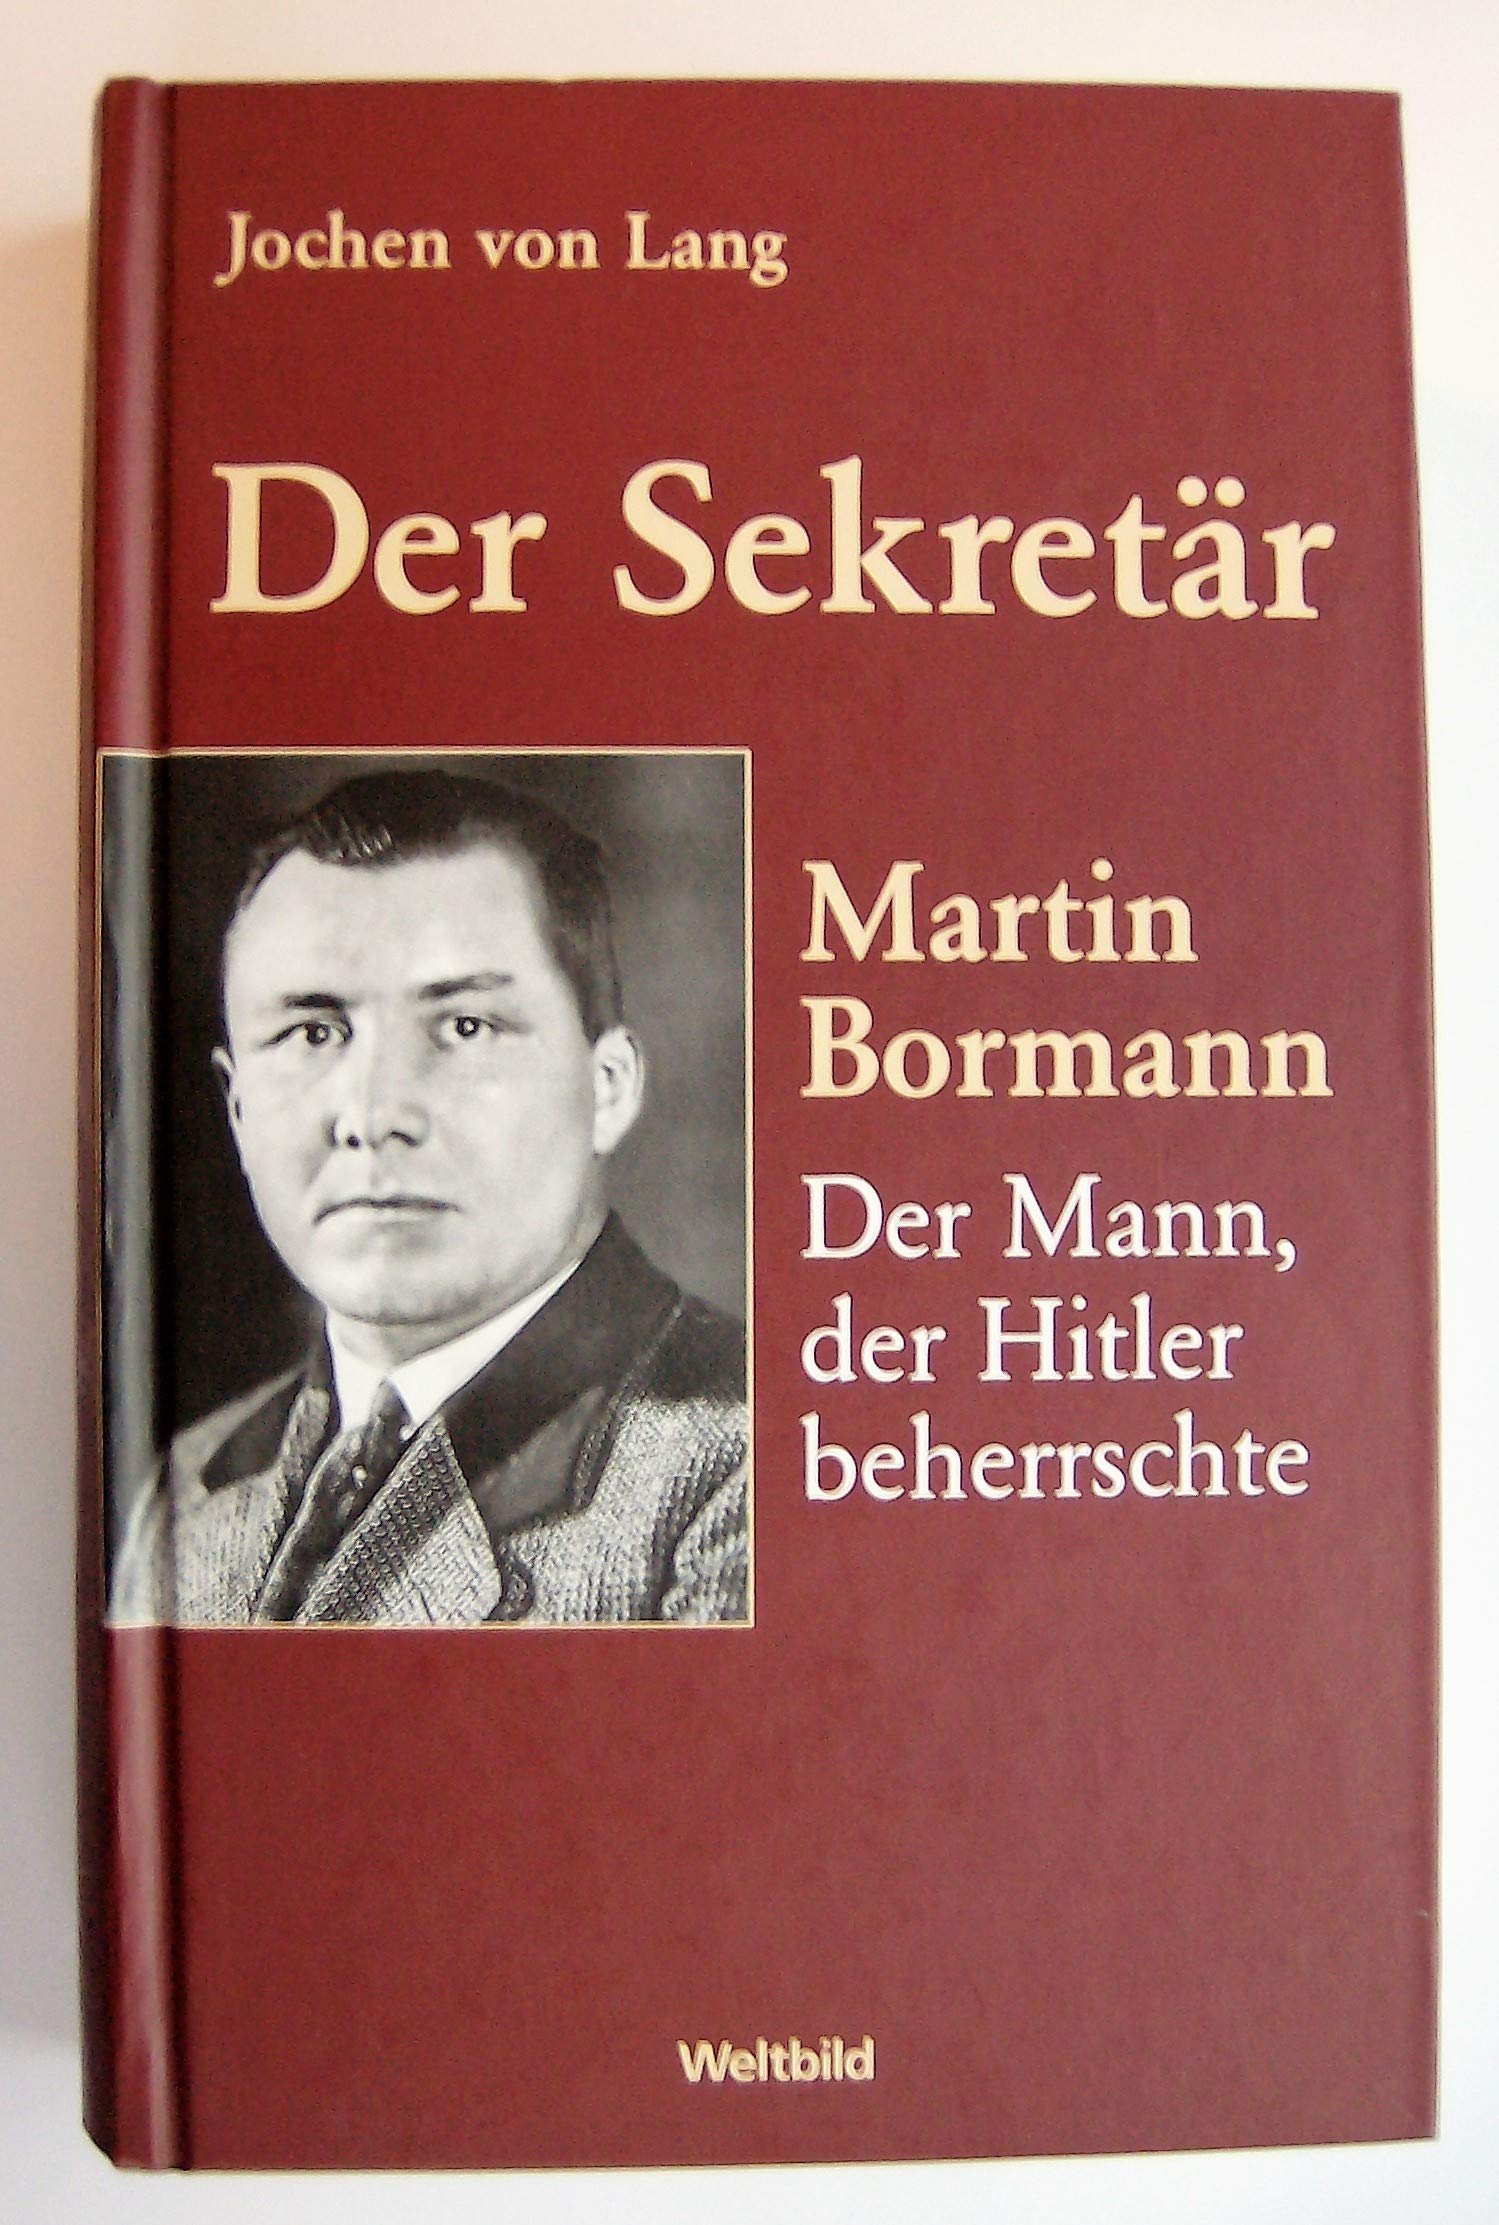 Der Sekretär : Martin Bormann: der Mann, der Hitler beherrschte ; mit zahlreichen Dokumenten. Unter Mitarb. von Claus Sibyll - Lang, Jochen von